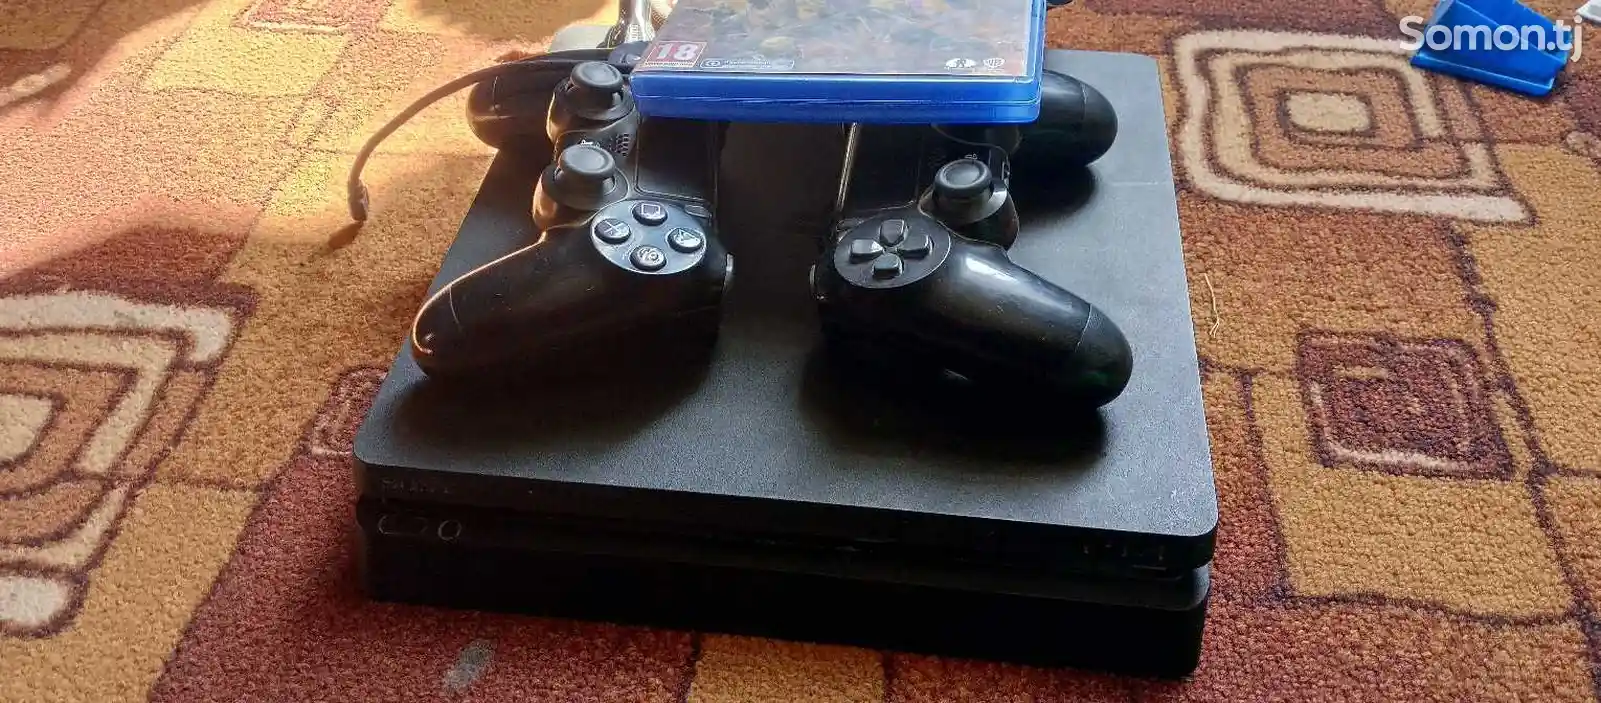 Игровая приставка Sony PlayStation-3